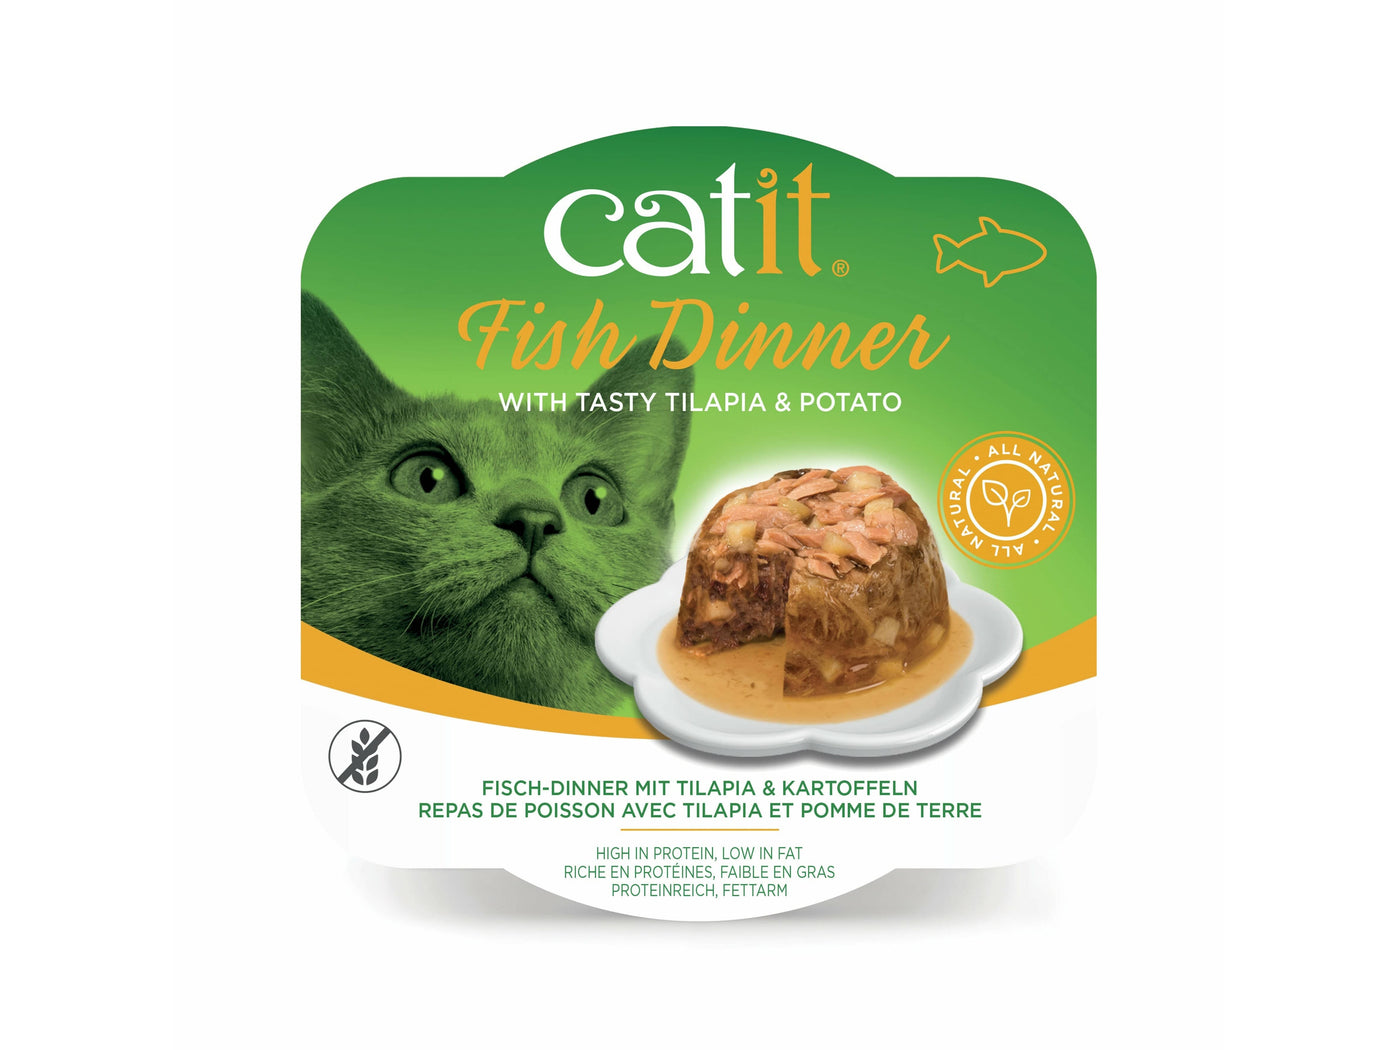 Catit Fish Dinner, Tilapia & Potato 80 g, 6pcs/box